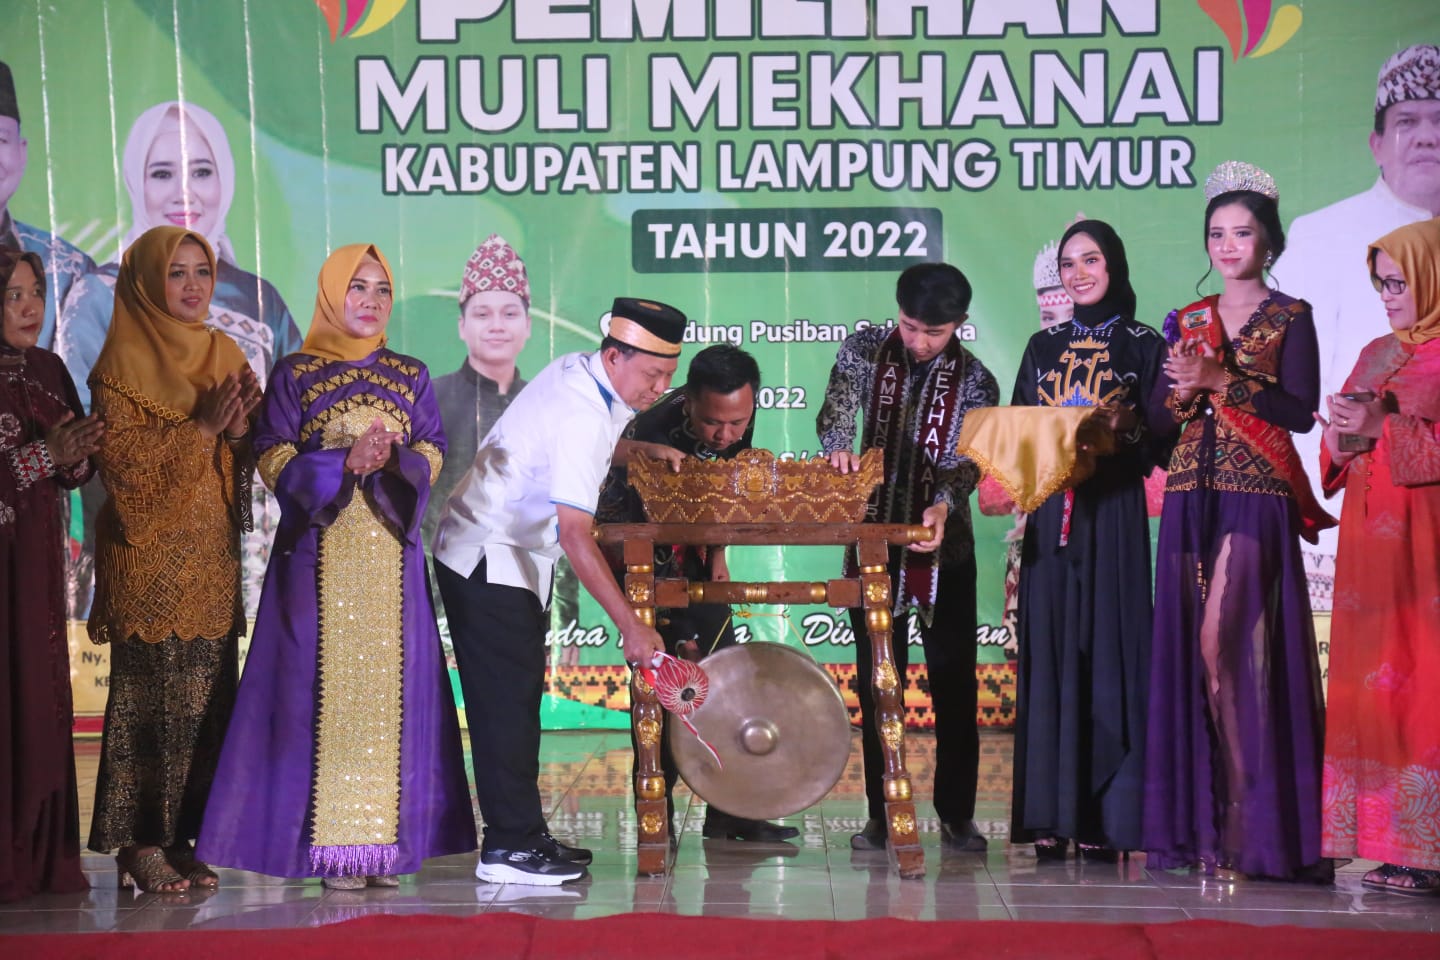 Bupati Lampung Timur M. Dawam Rahardjo Memberi Sambutan Dalam Acara Grand Final Pemilihan Muli Mekhanai Lampung Timur